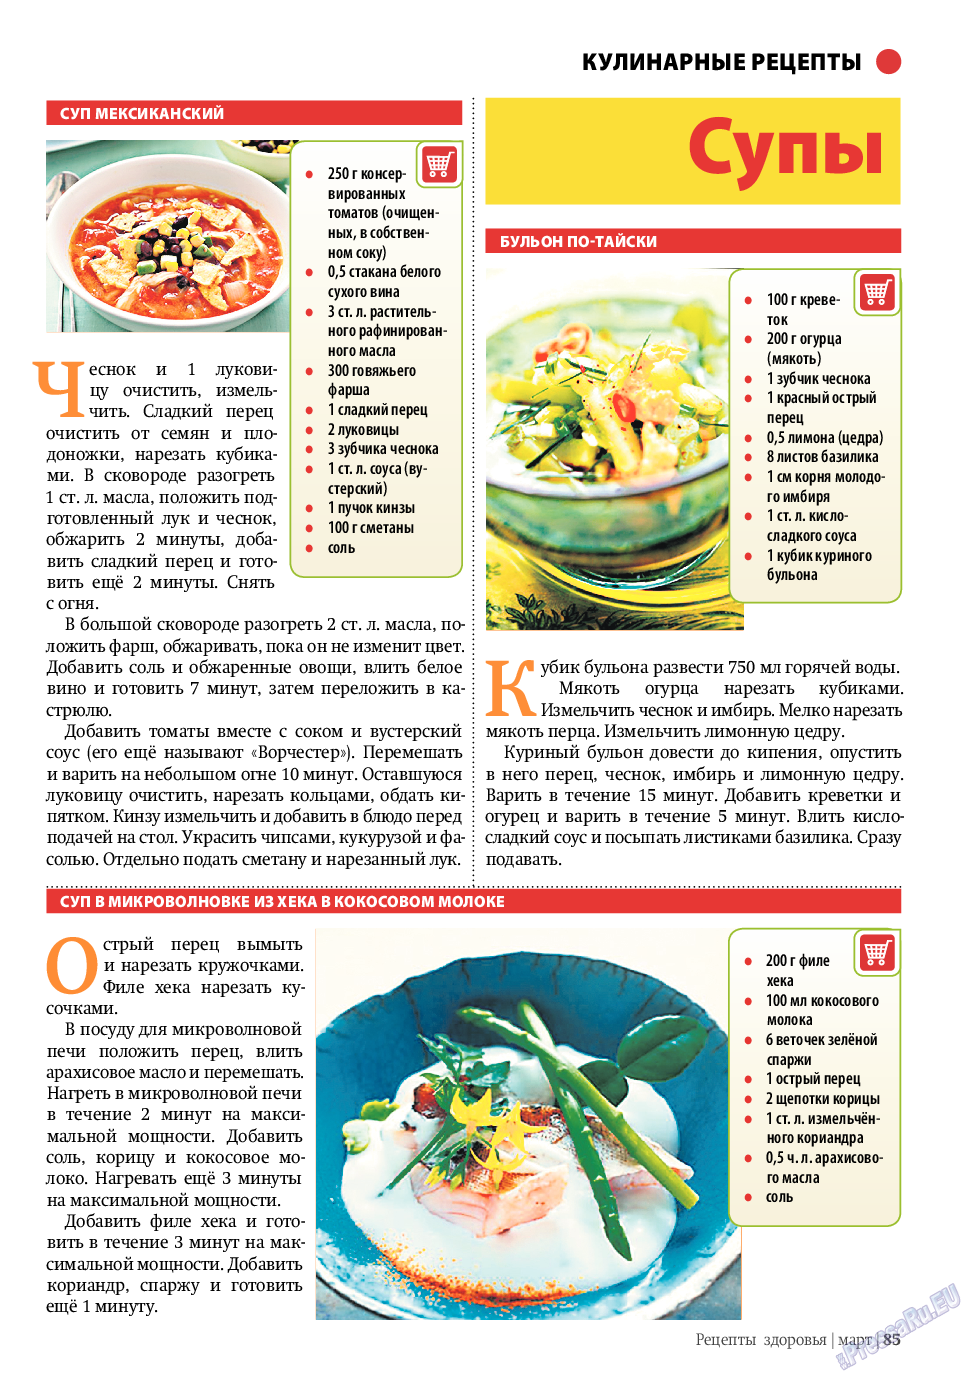 Рецепты здоровья, журнал. 2010 №3 стр.85